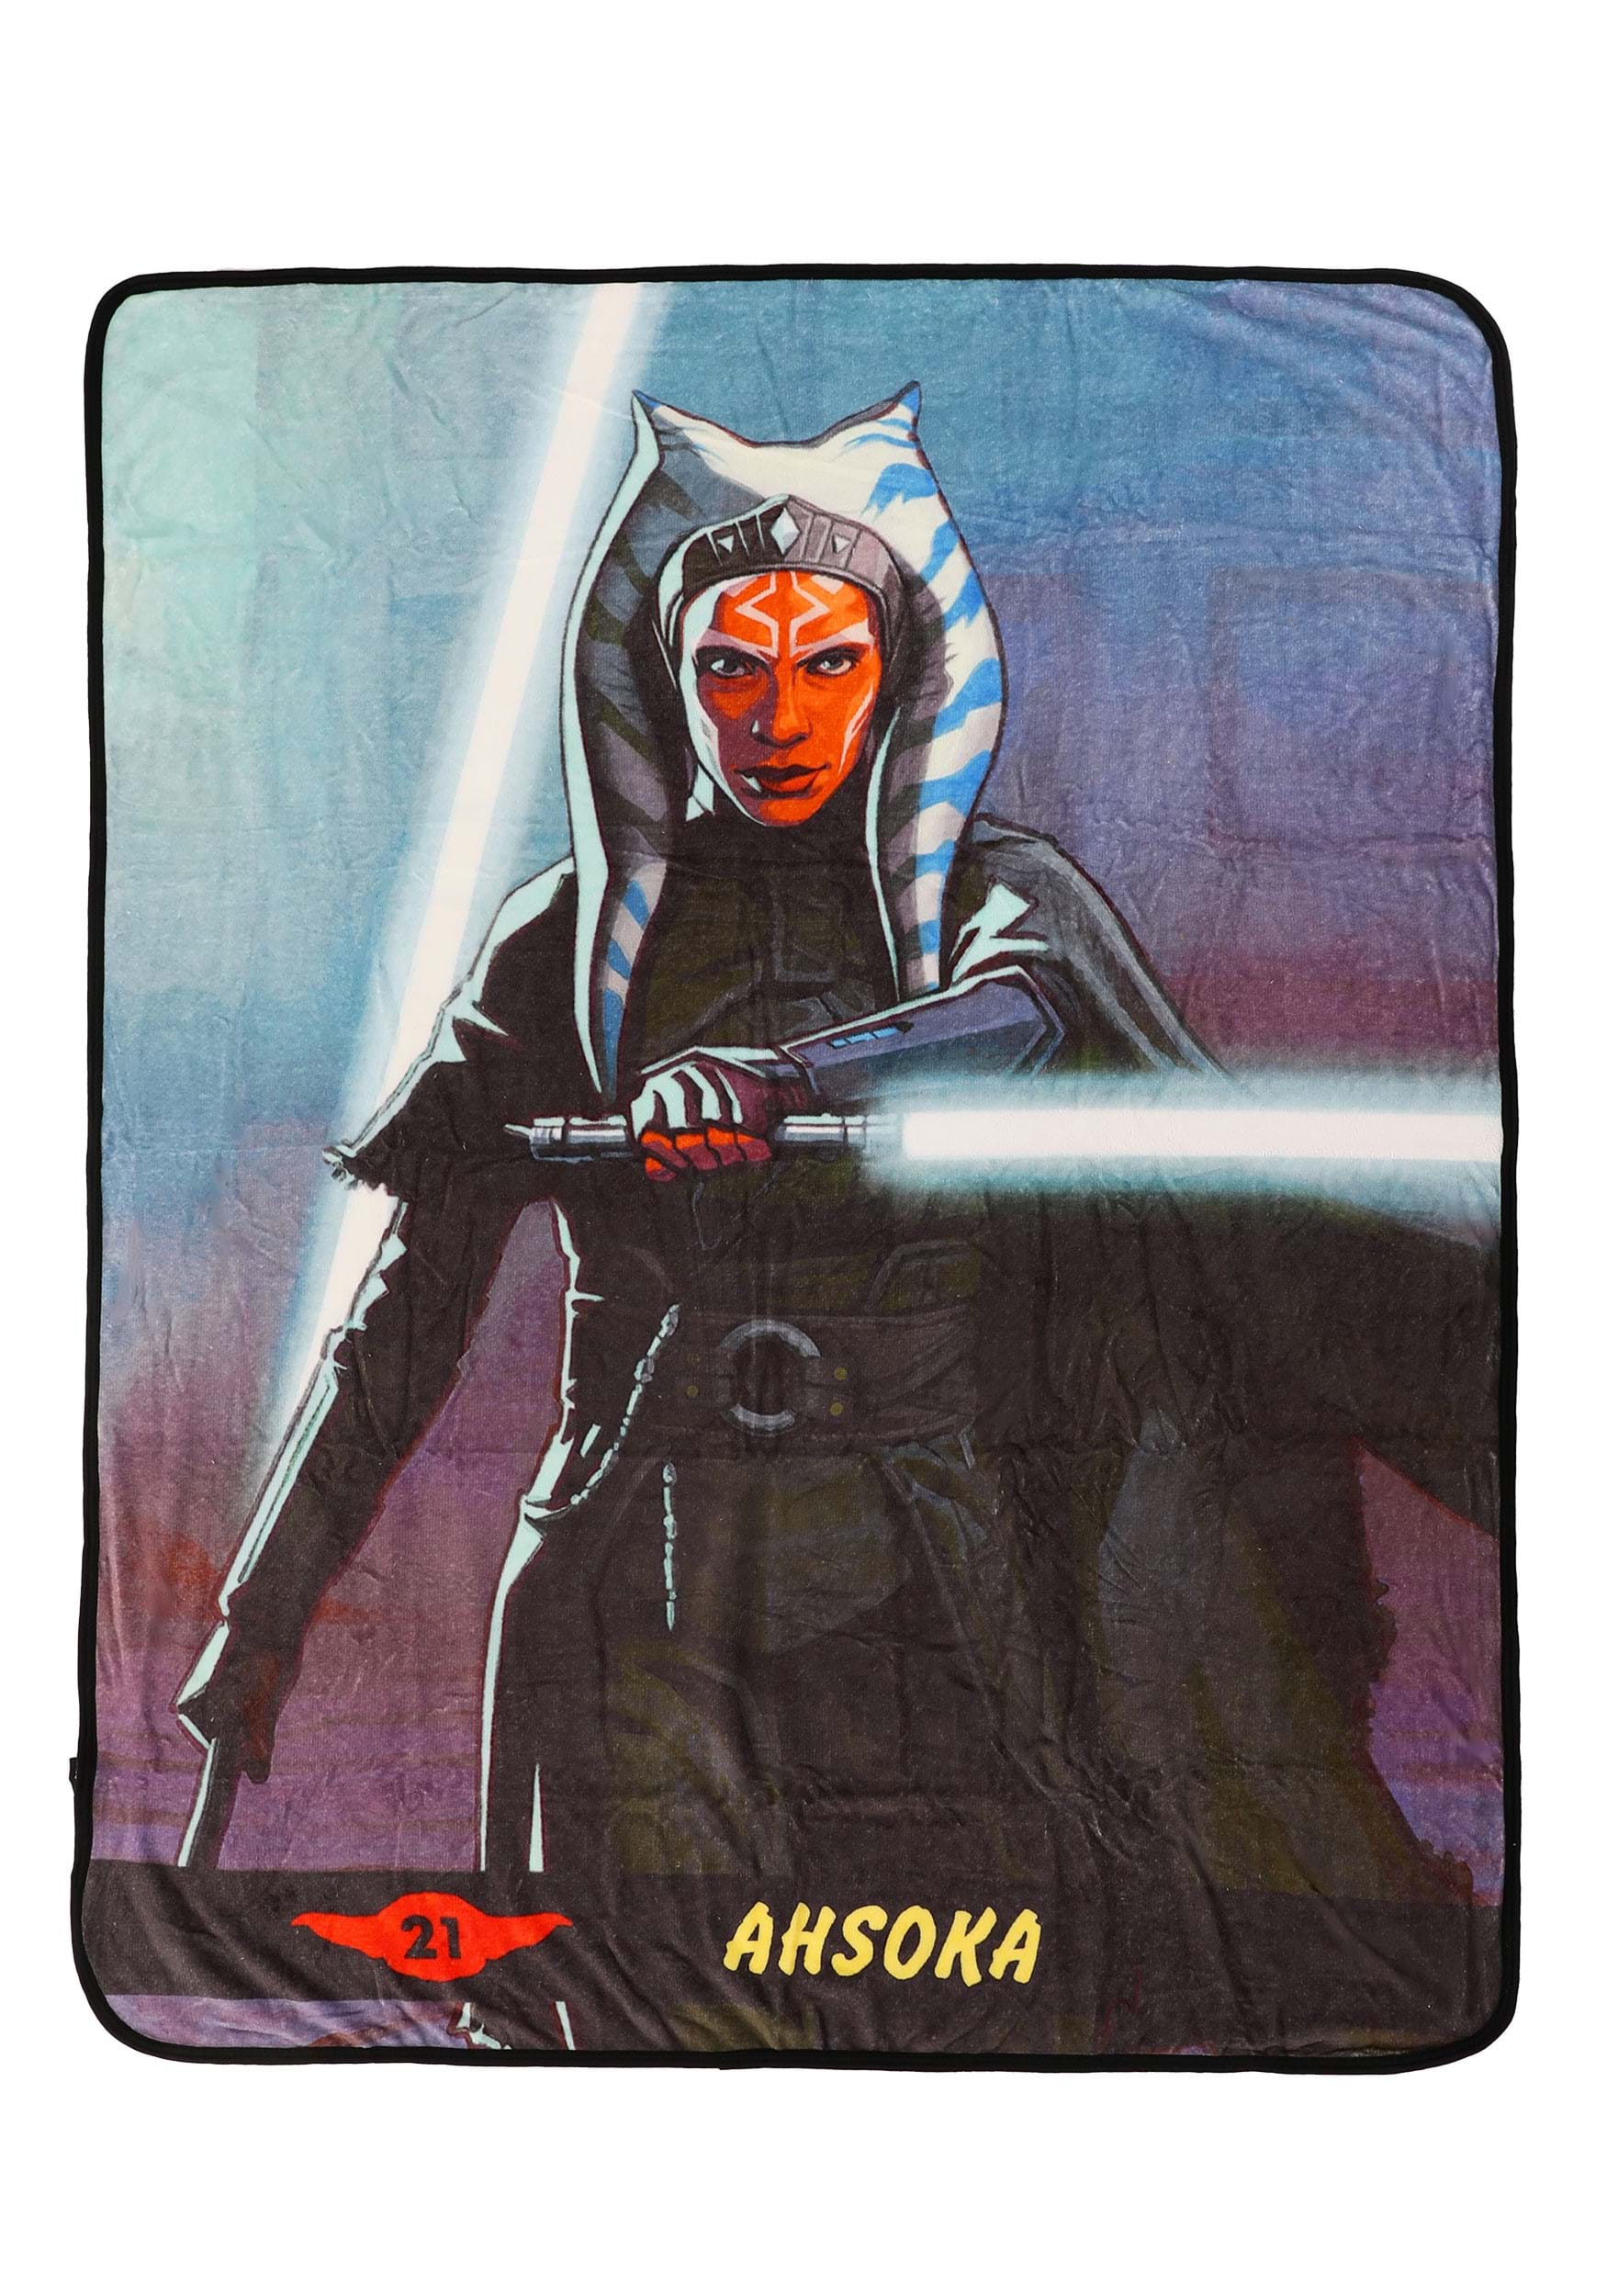 Ahsoka Look Tough Throw Blanket | Star Wars Blankets